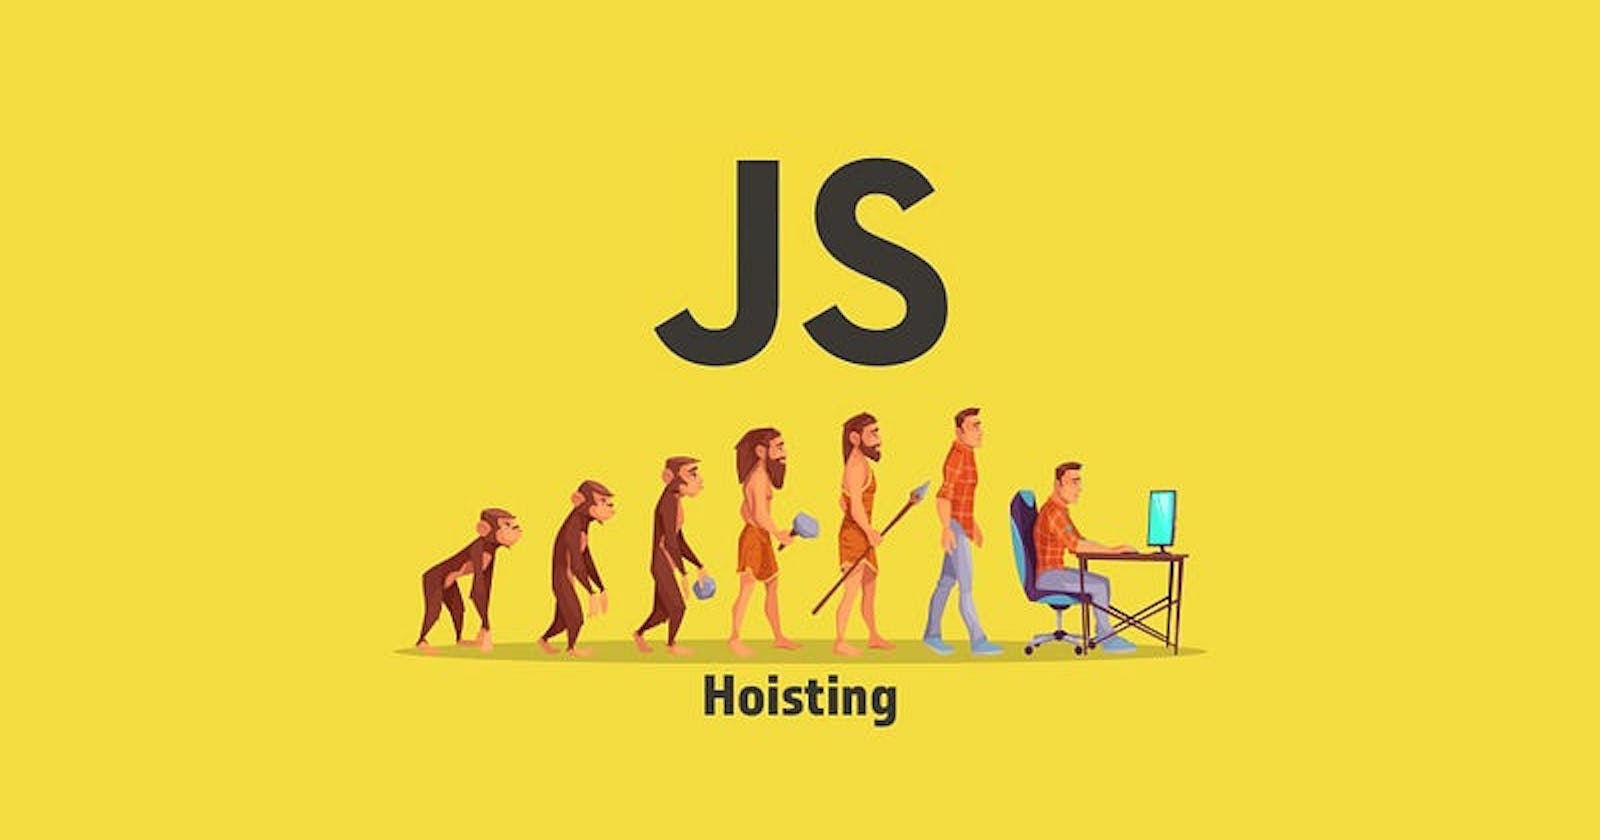 Understanding Hoisting in JavaScript